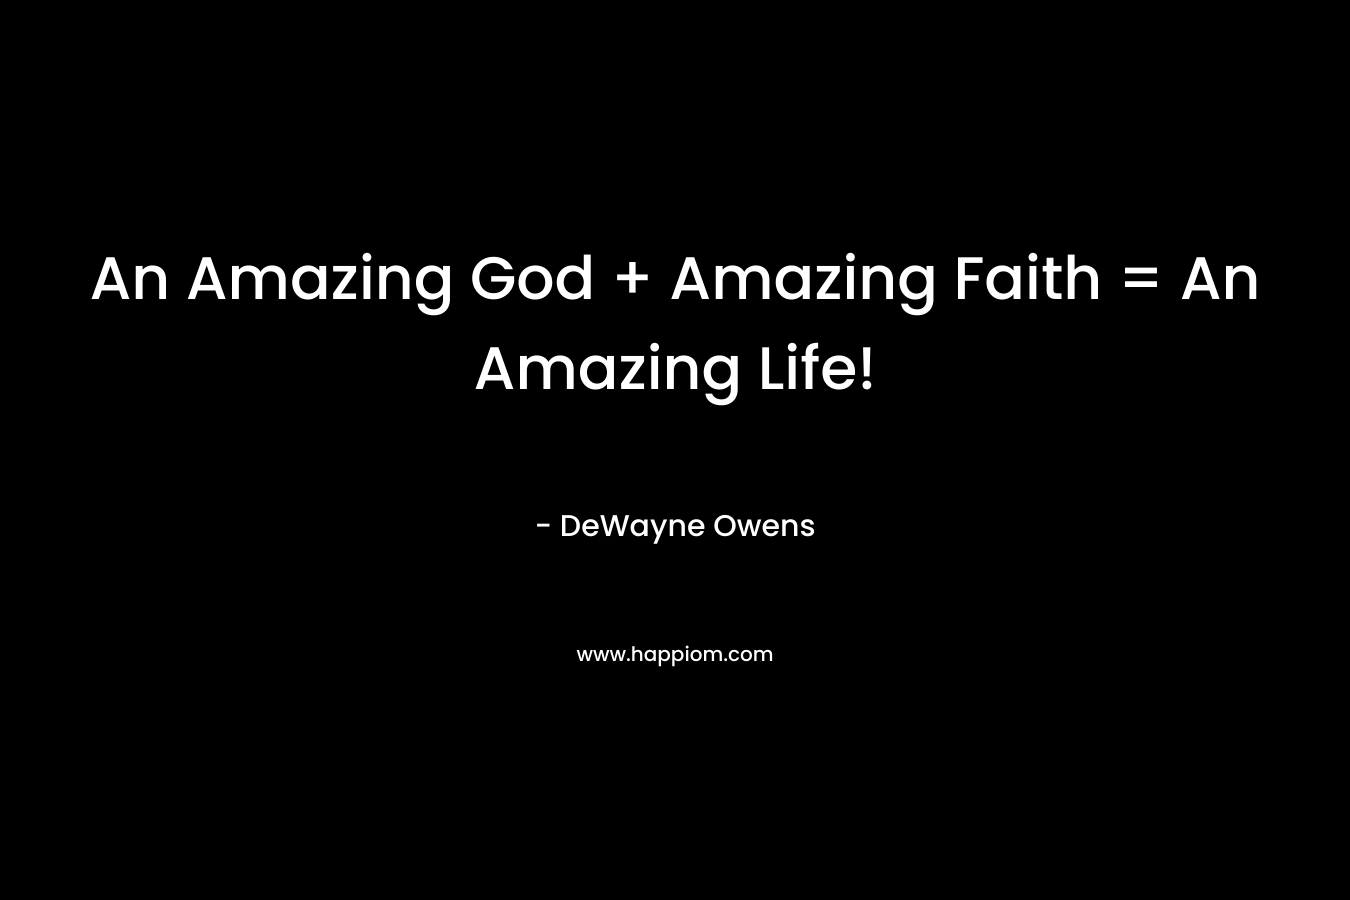 An Amazing God + Amazing Faith = An Amazing Life!